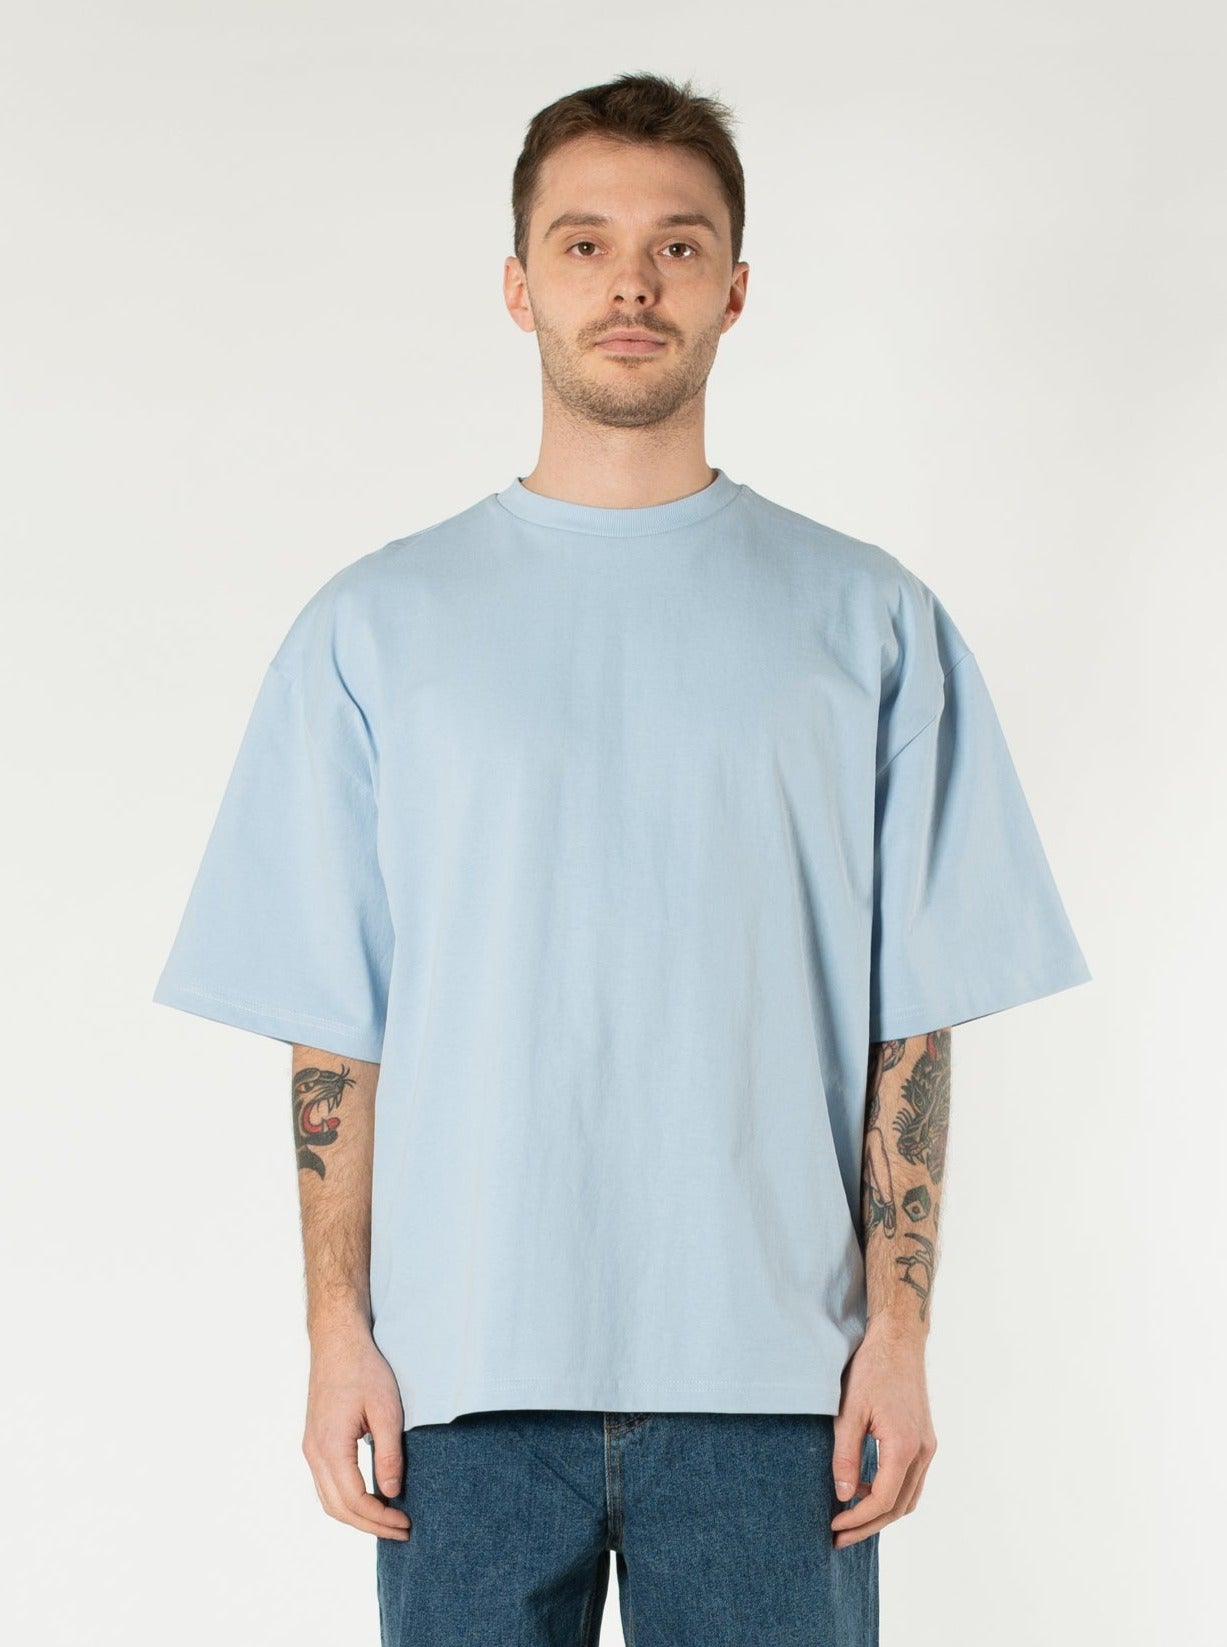 Chiffons t-shirt colorés – 25 lb/boîte S-20684 - Uline